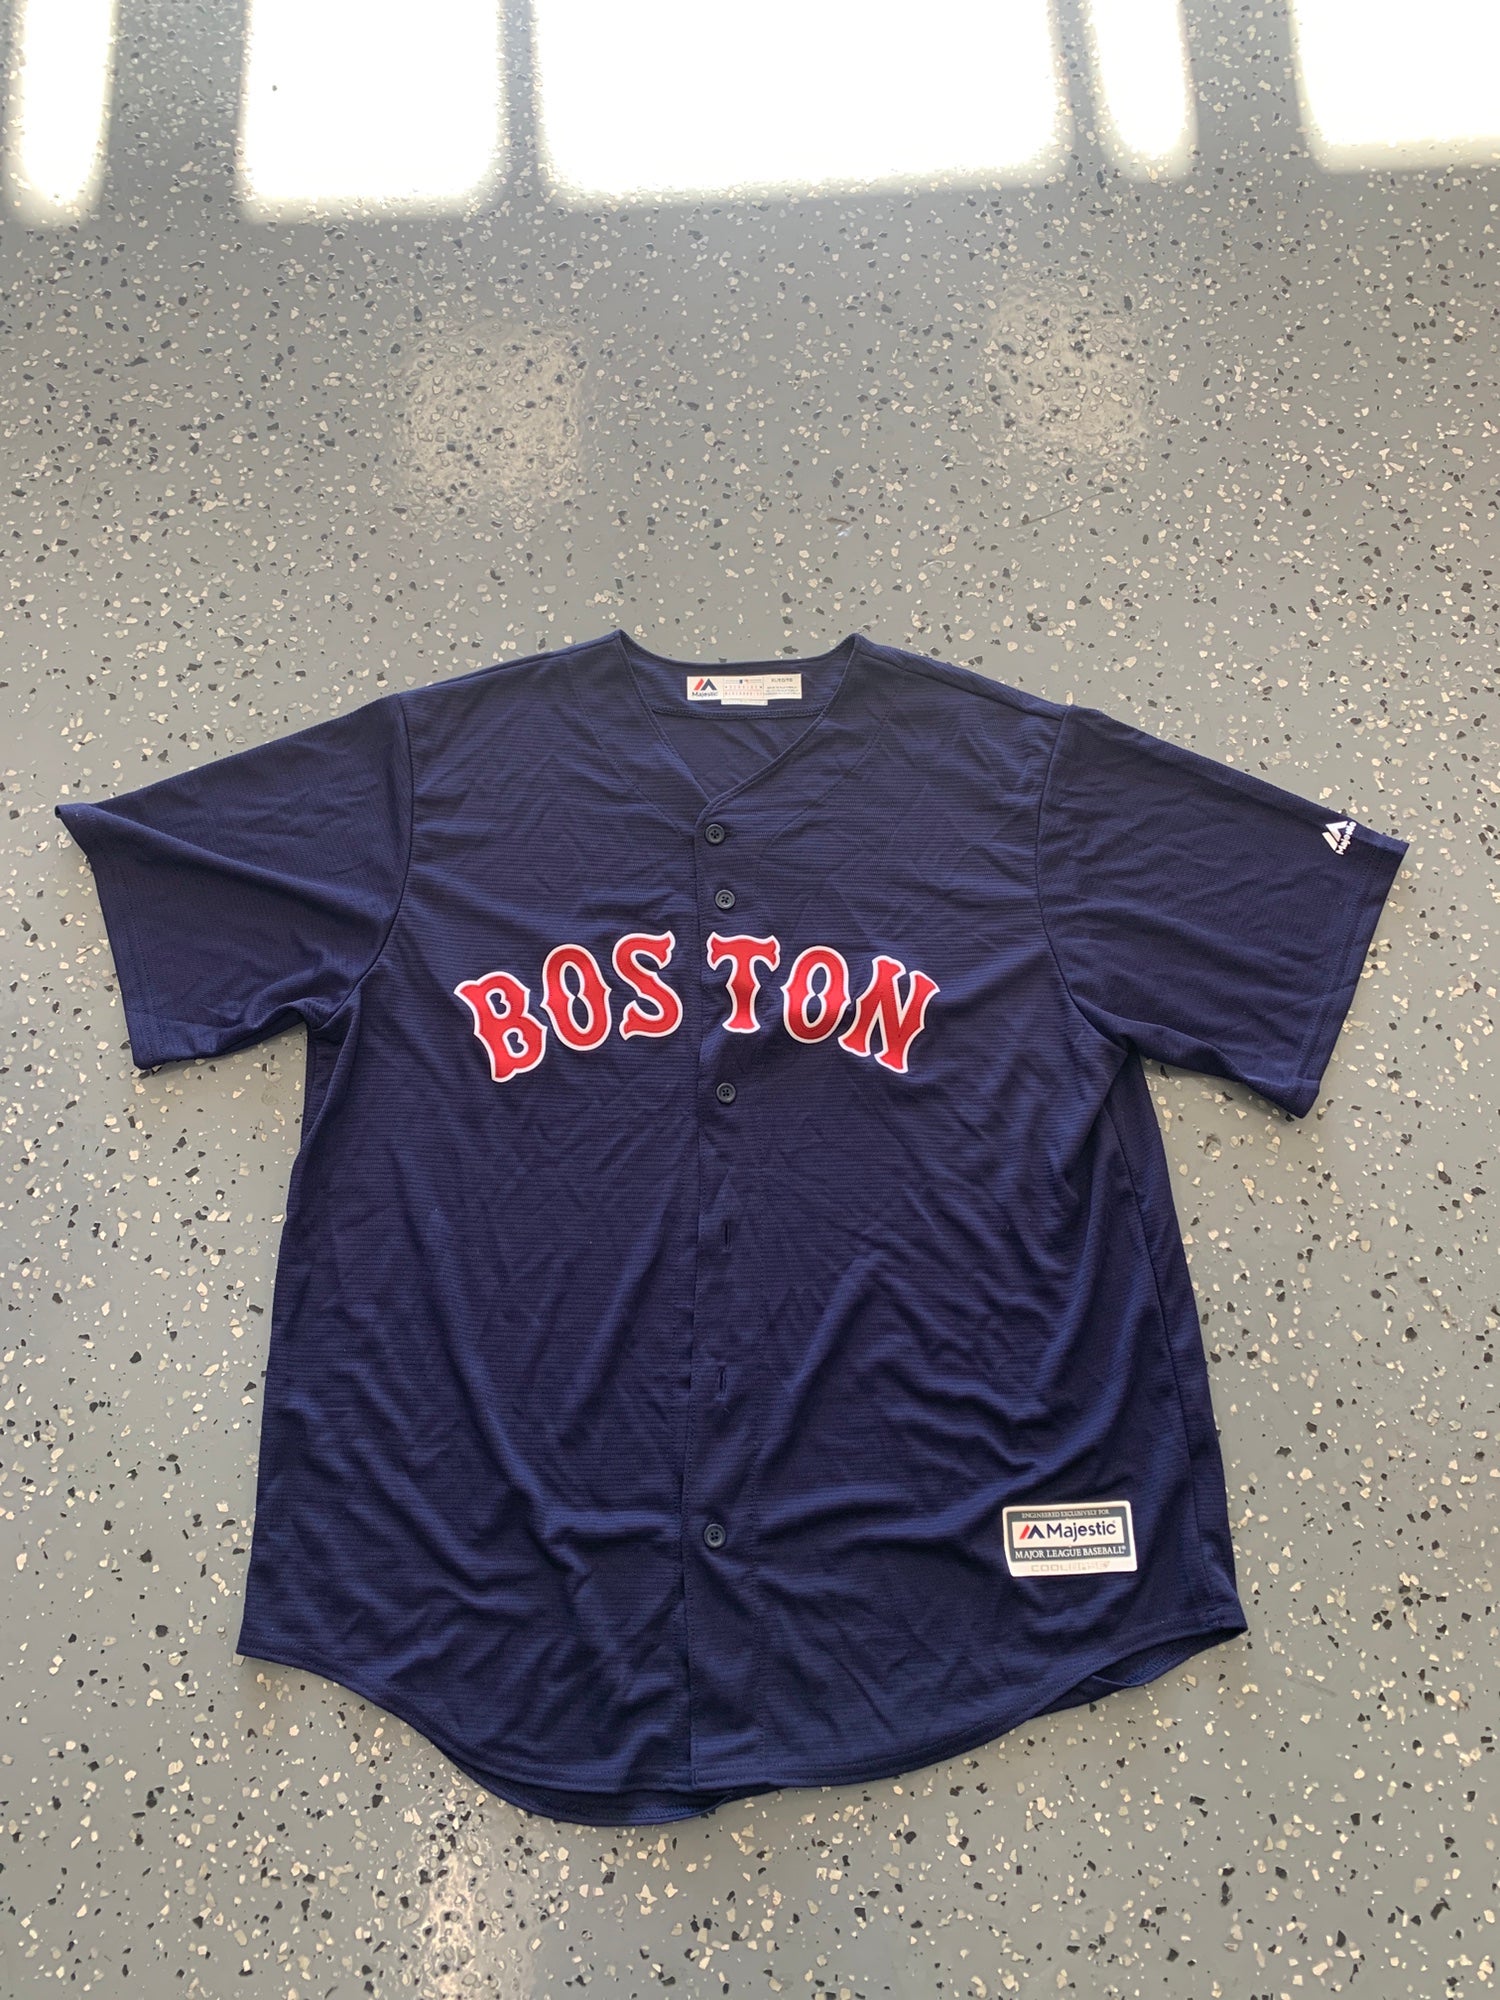 Nike Men's Boston Red Sox Alex Verdugo #99 White Cool Base Jersey